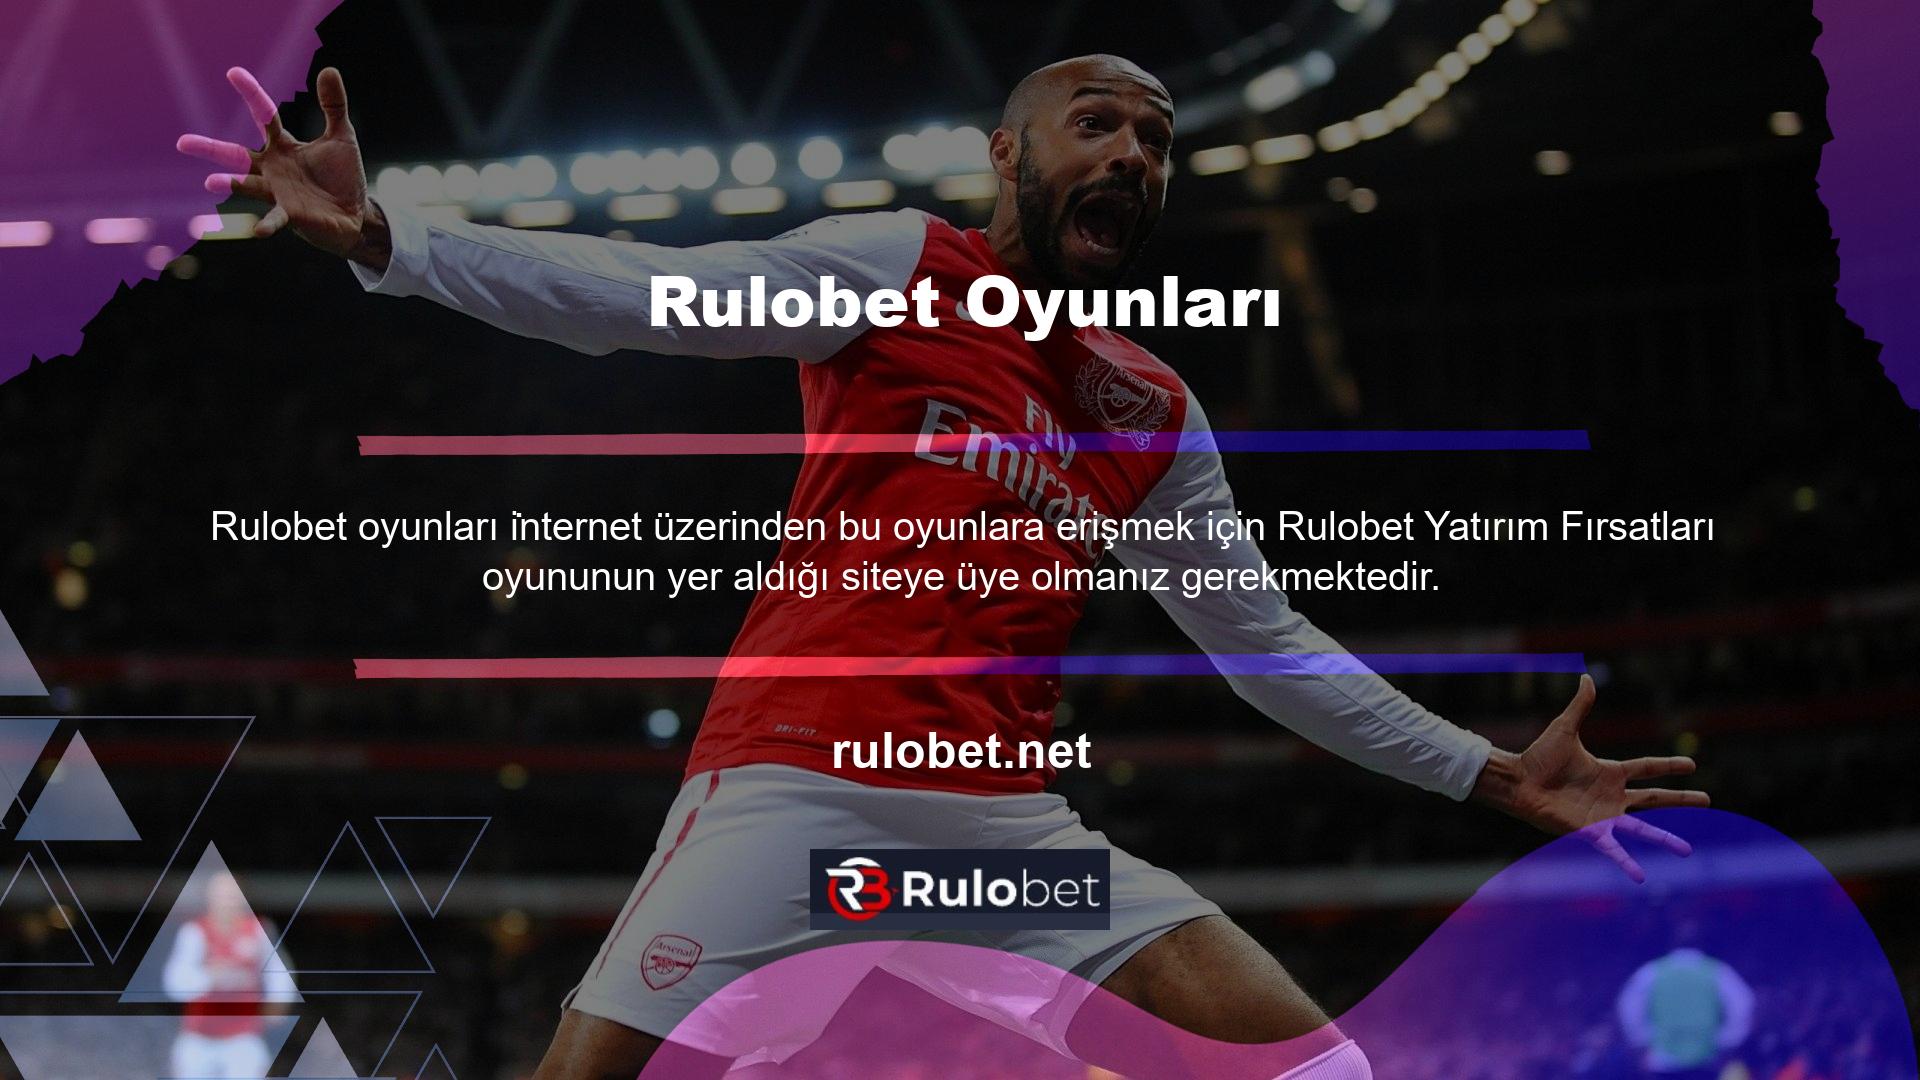 Rulobet Casino Games, Rulobet Rulet Oyunları da dahil olmak üzere çok çeşitli oyunlar sunmaktadır